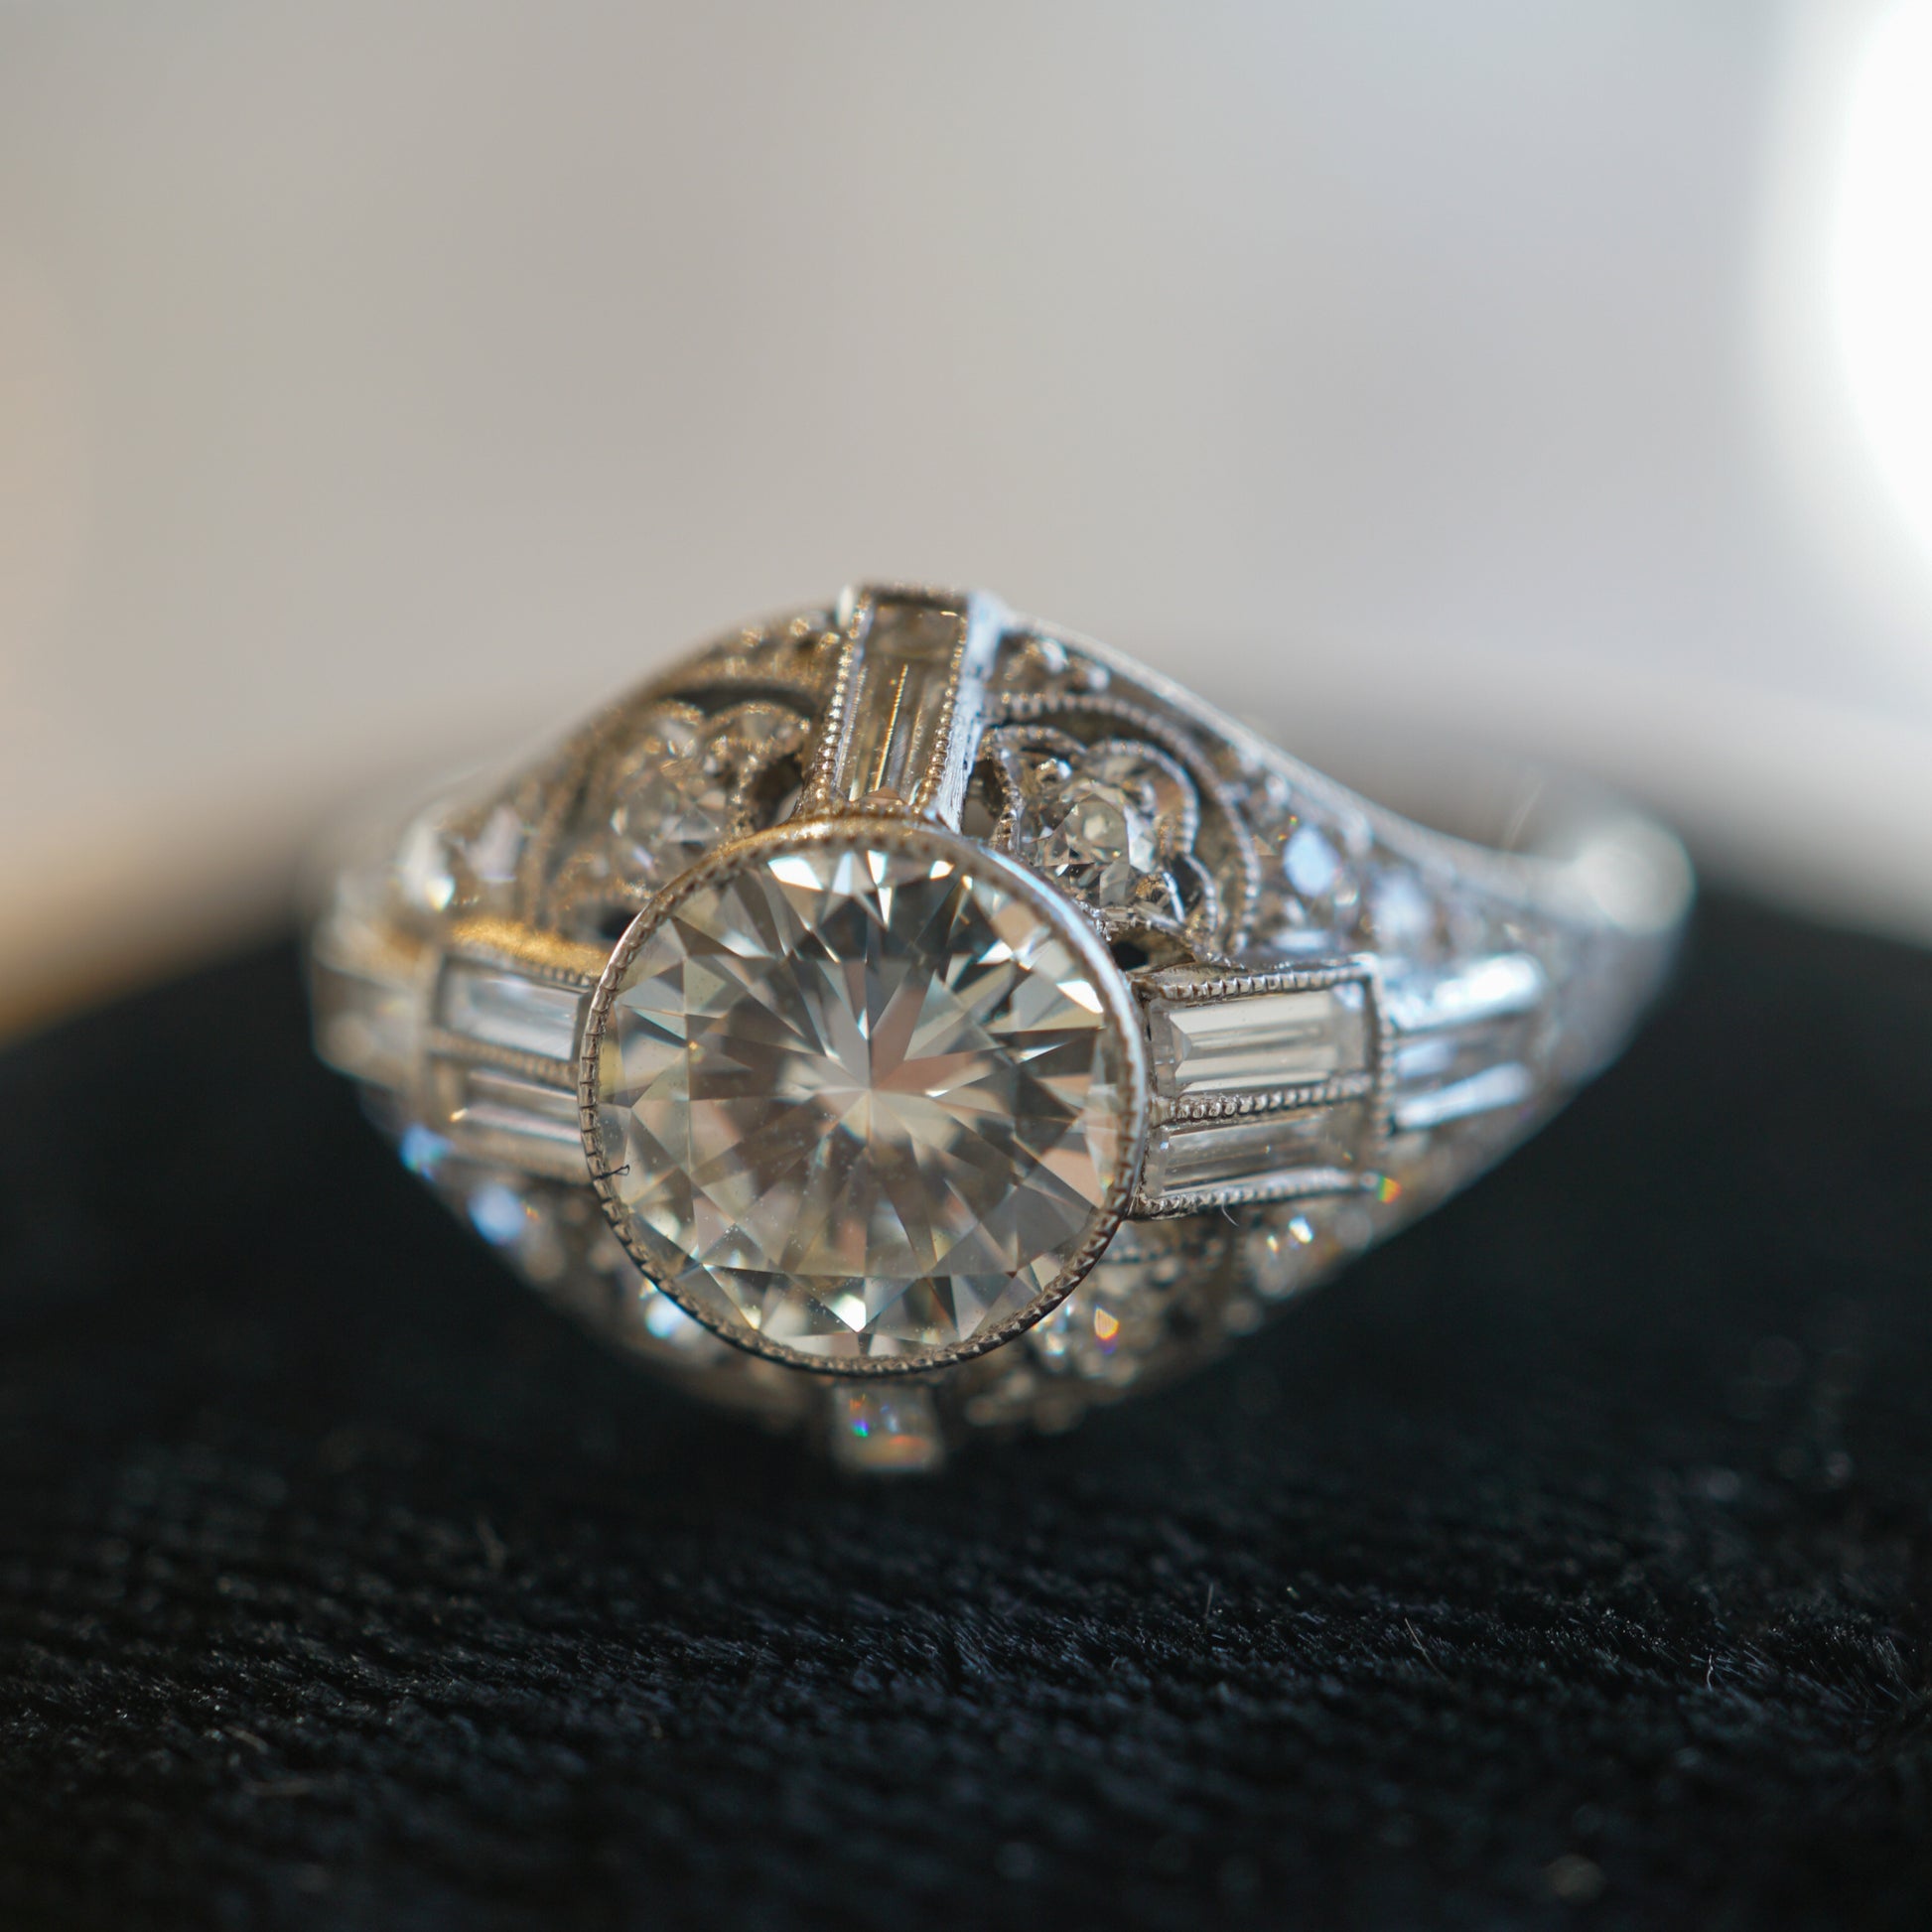 1.01 Vintage Art Deco Diamond Engagement Ring in Platinum